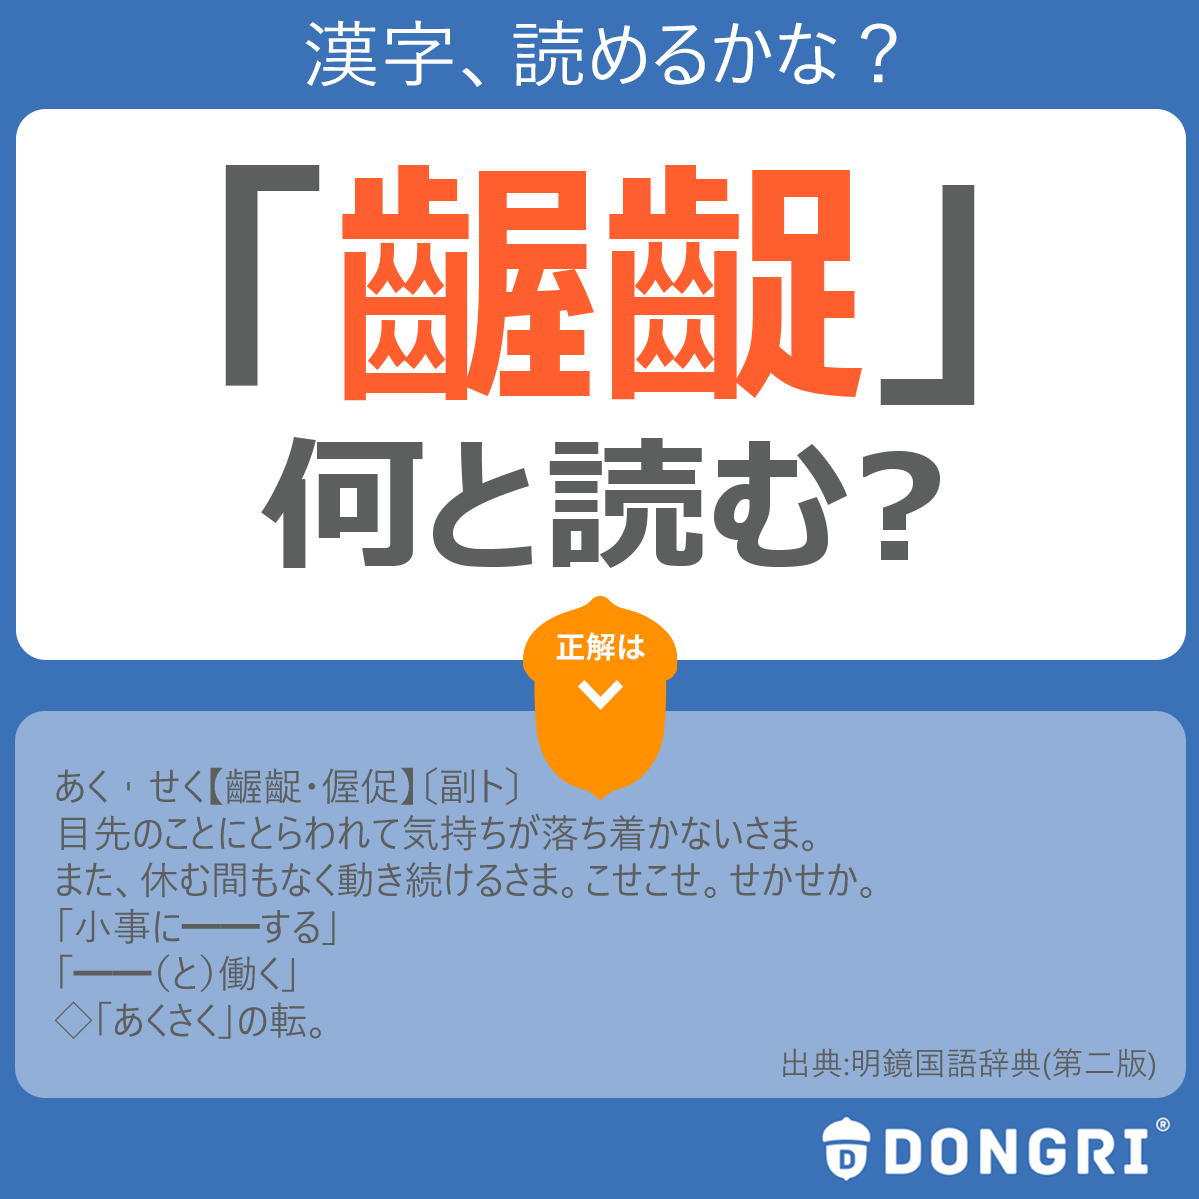 辞書アプリ Dongri 漢字の読み問題です 齷齪と働く 齷齪 をひらがなで何と読むでしょう 休む間もなく仕事などで動き続けることで 心にゆとりがない状態を表します 難しい漢字ですが 日常的によく使う言葉です 辞書 辞書アプリ Dongri